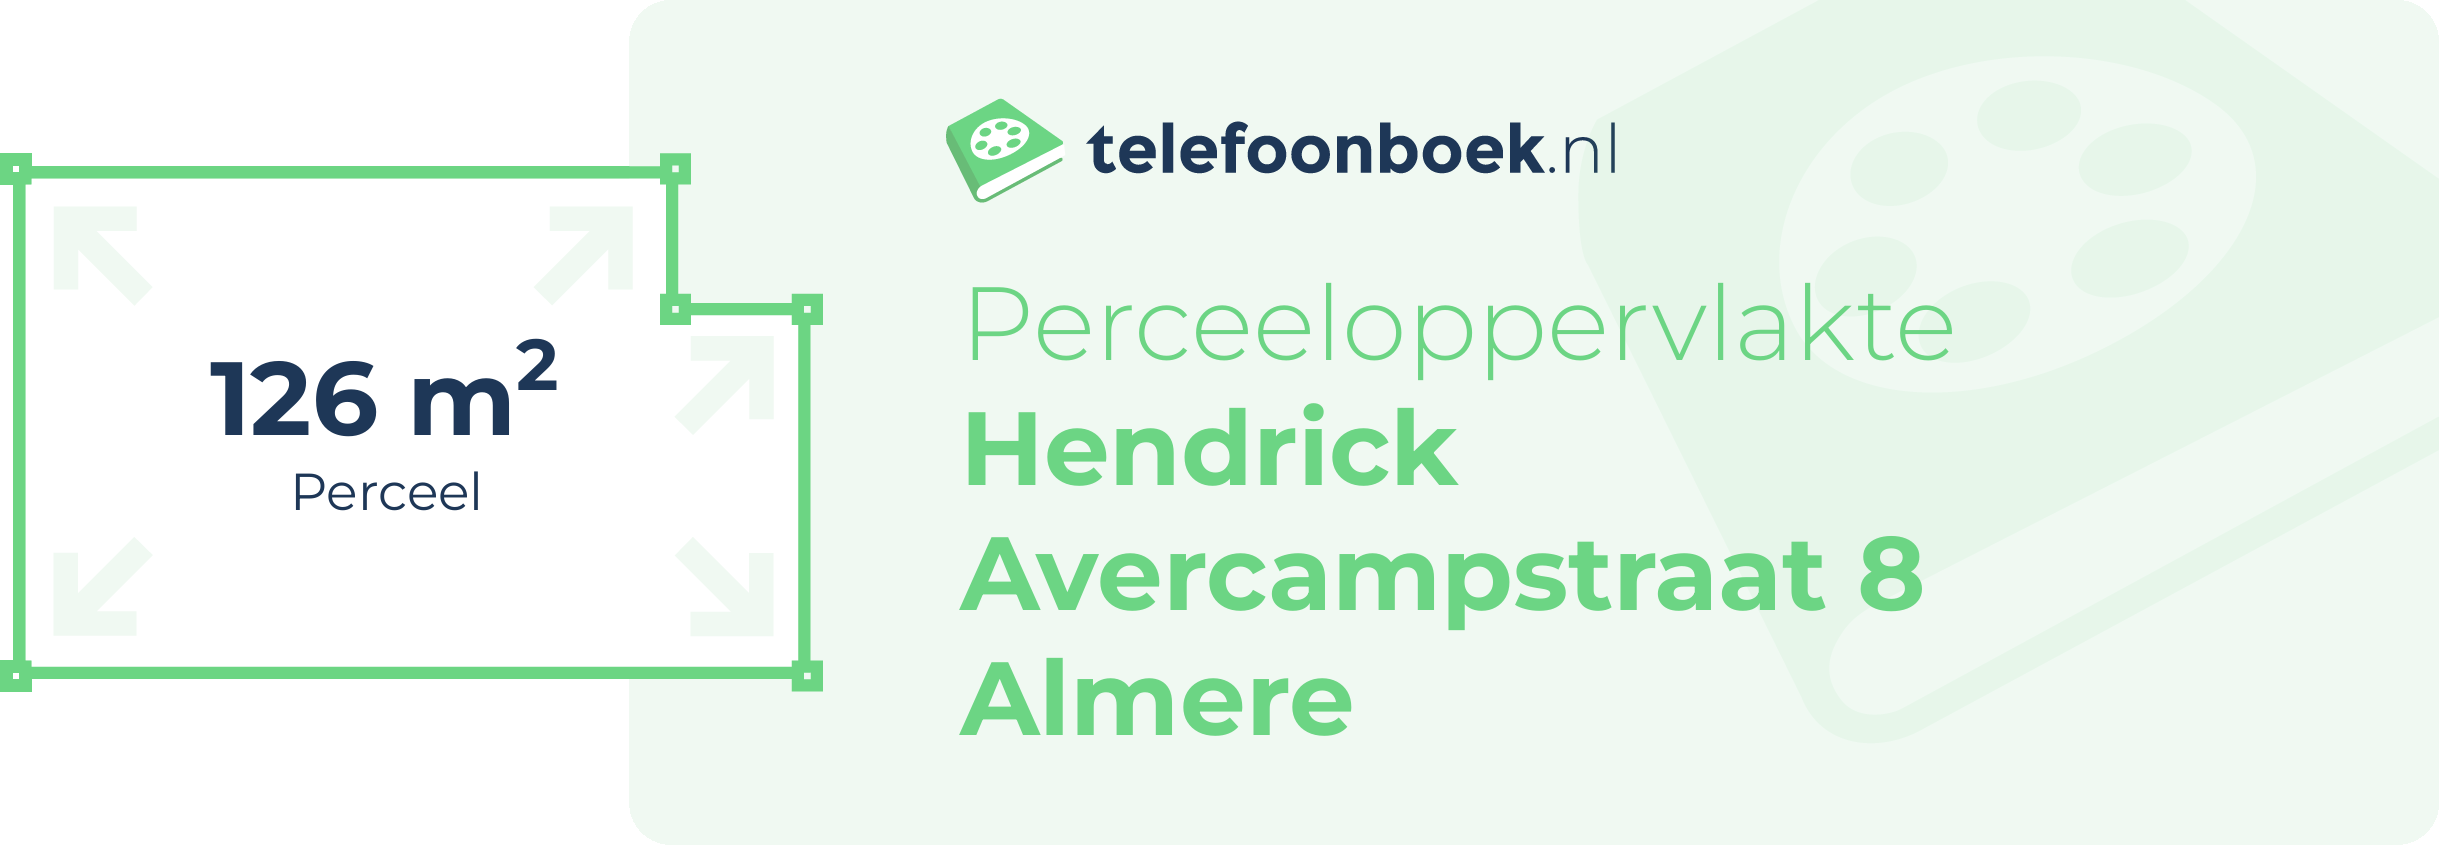 Perceeloppervlakte Hendrick Avercampstraat 8 Almere